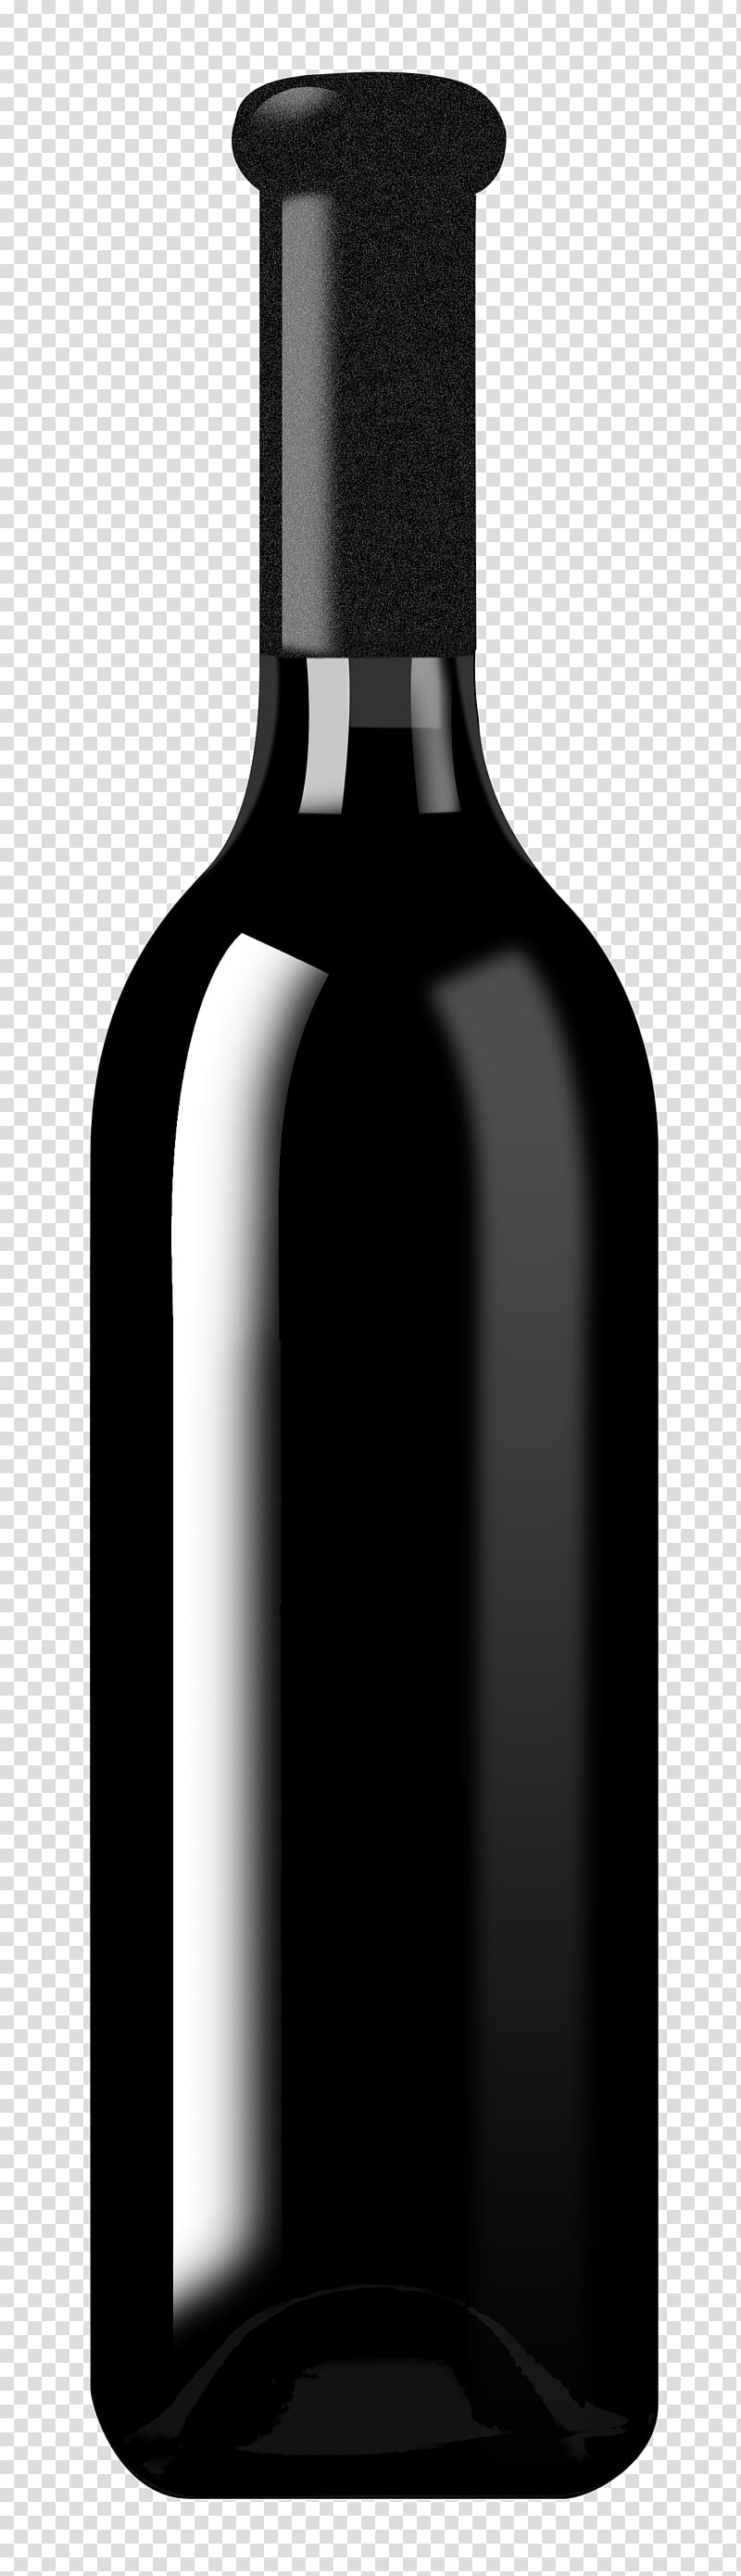 Red Wine Champagne Bottle Liqueur, Black wine bottle transparent ...